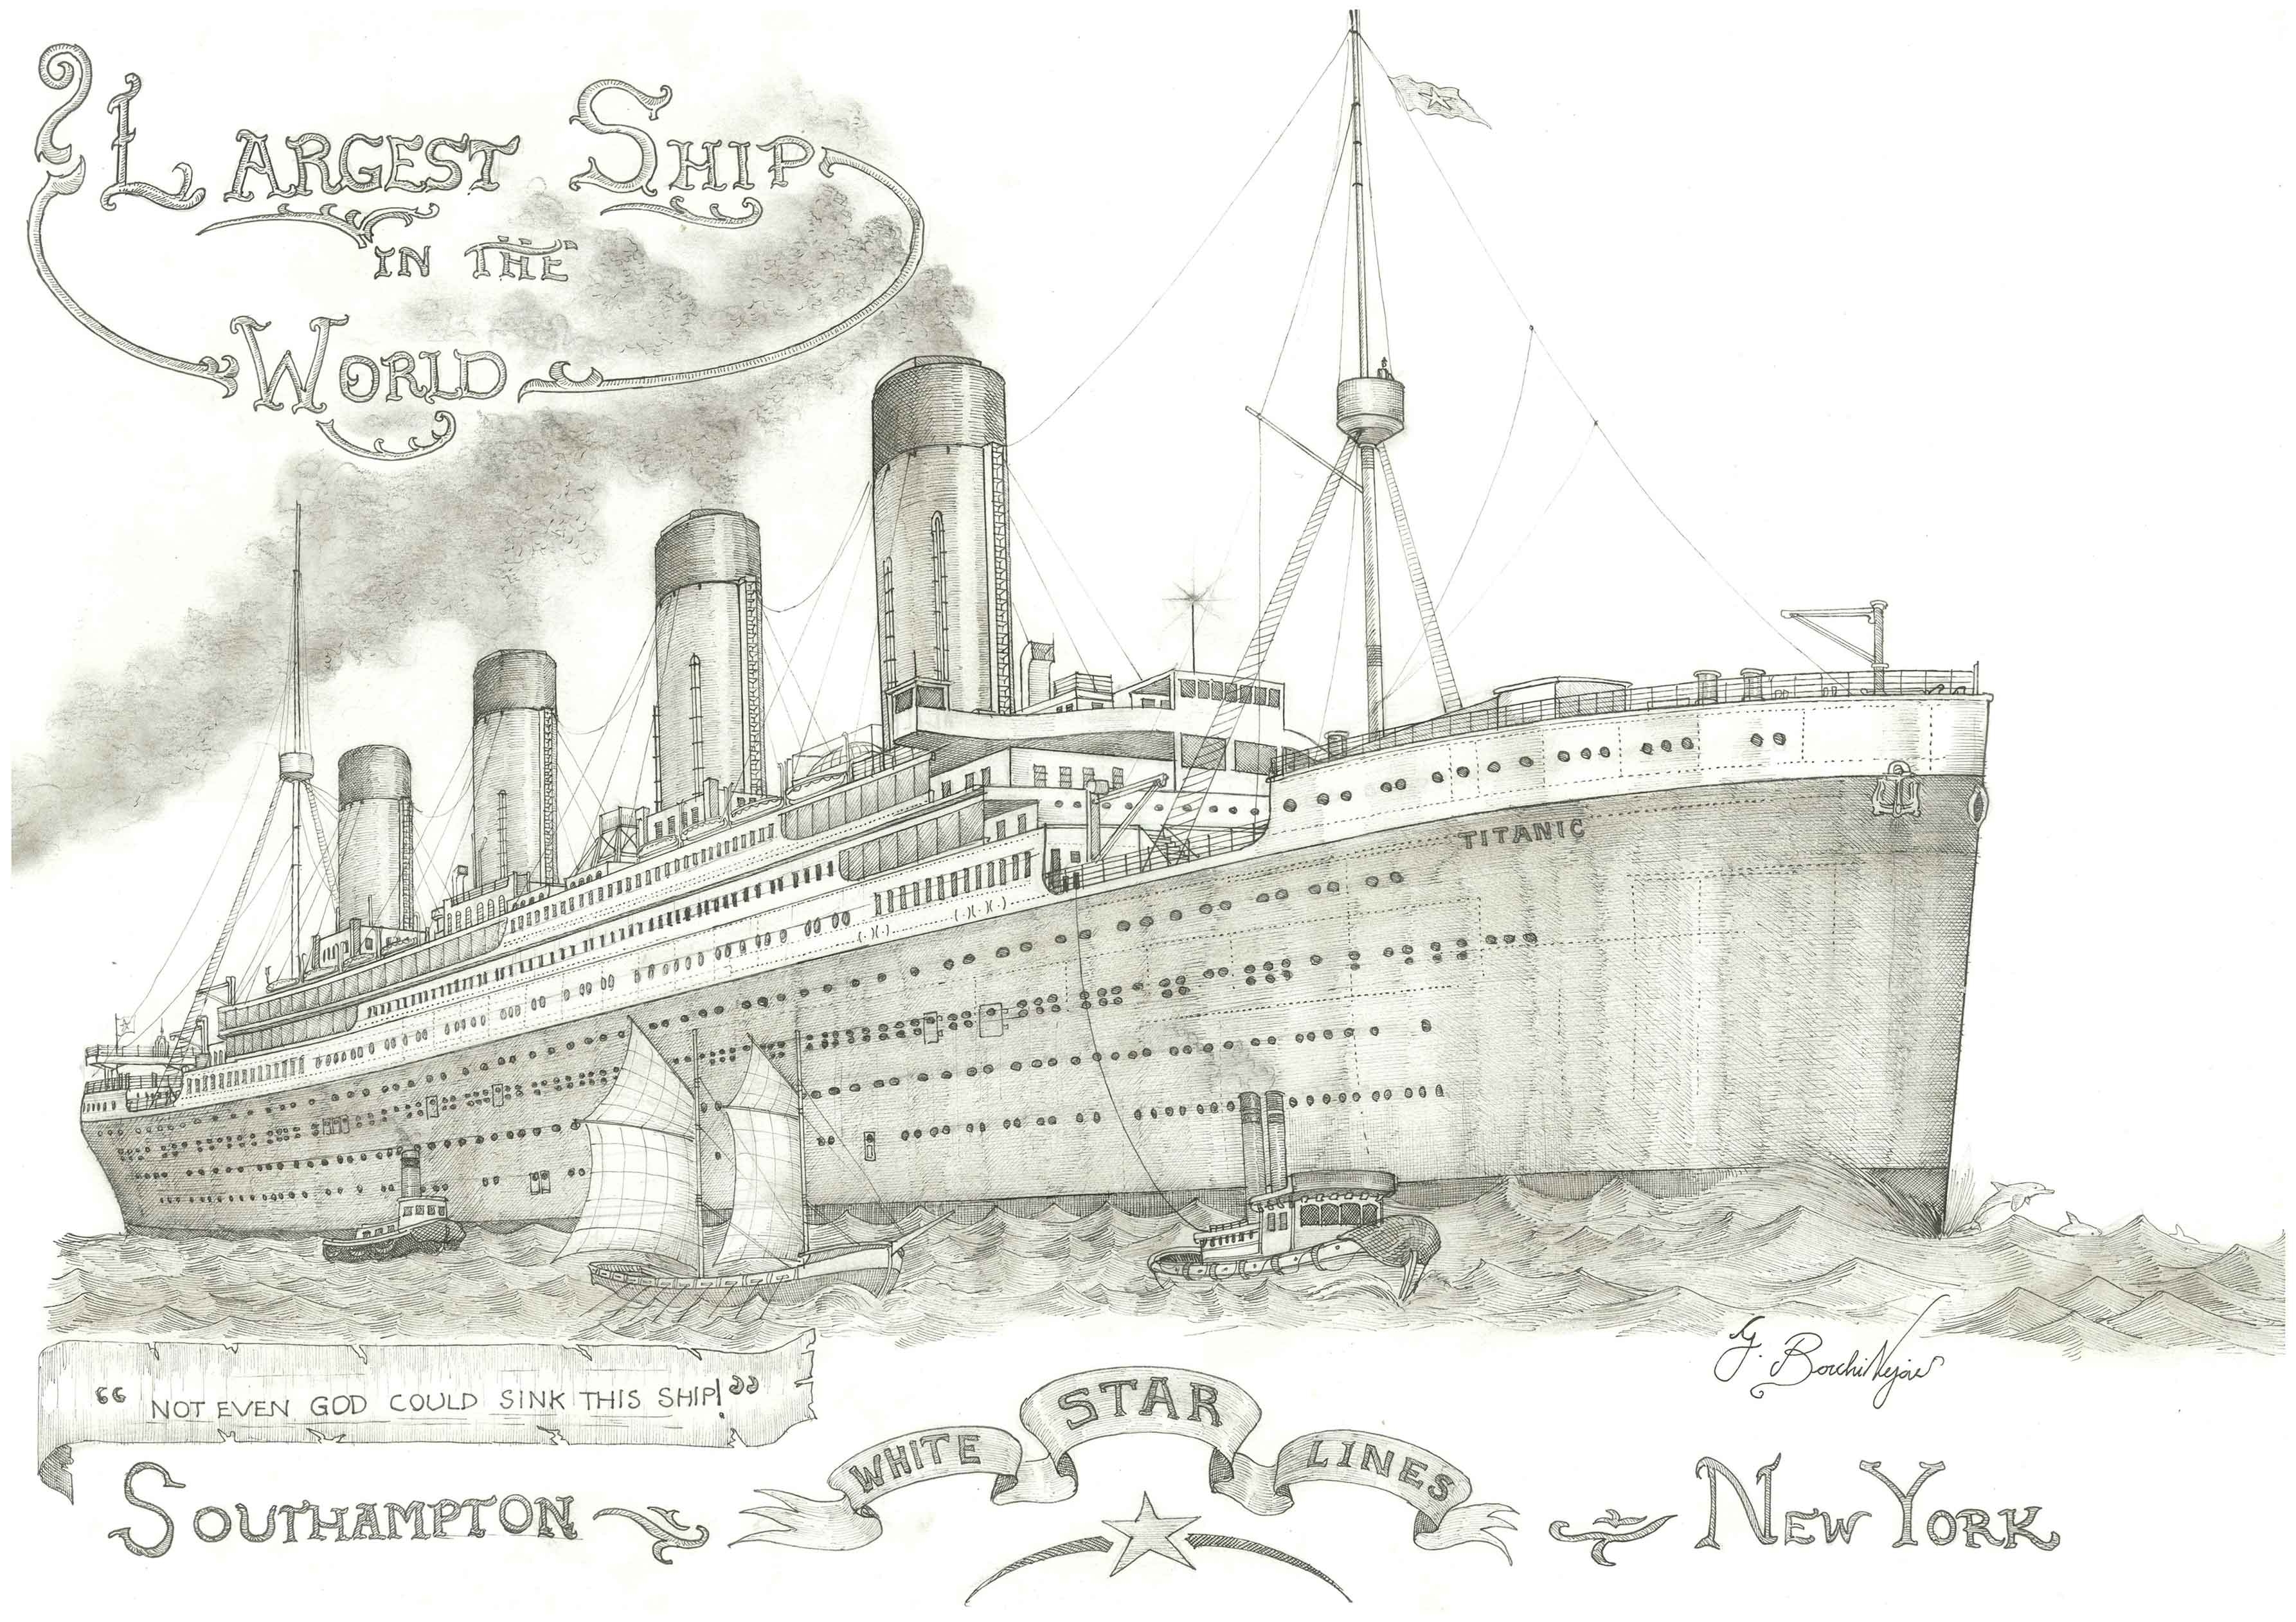 Титаник рисунок для детей